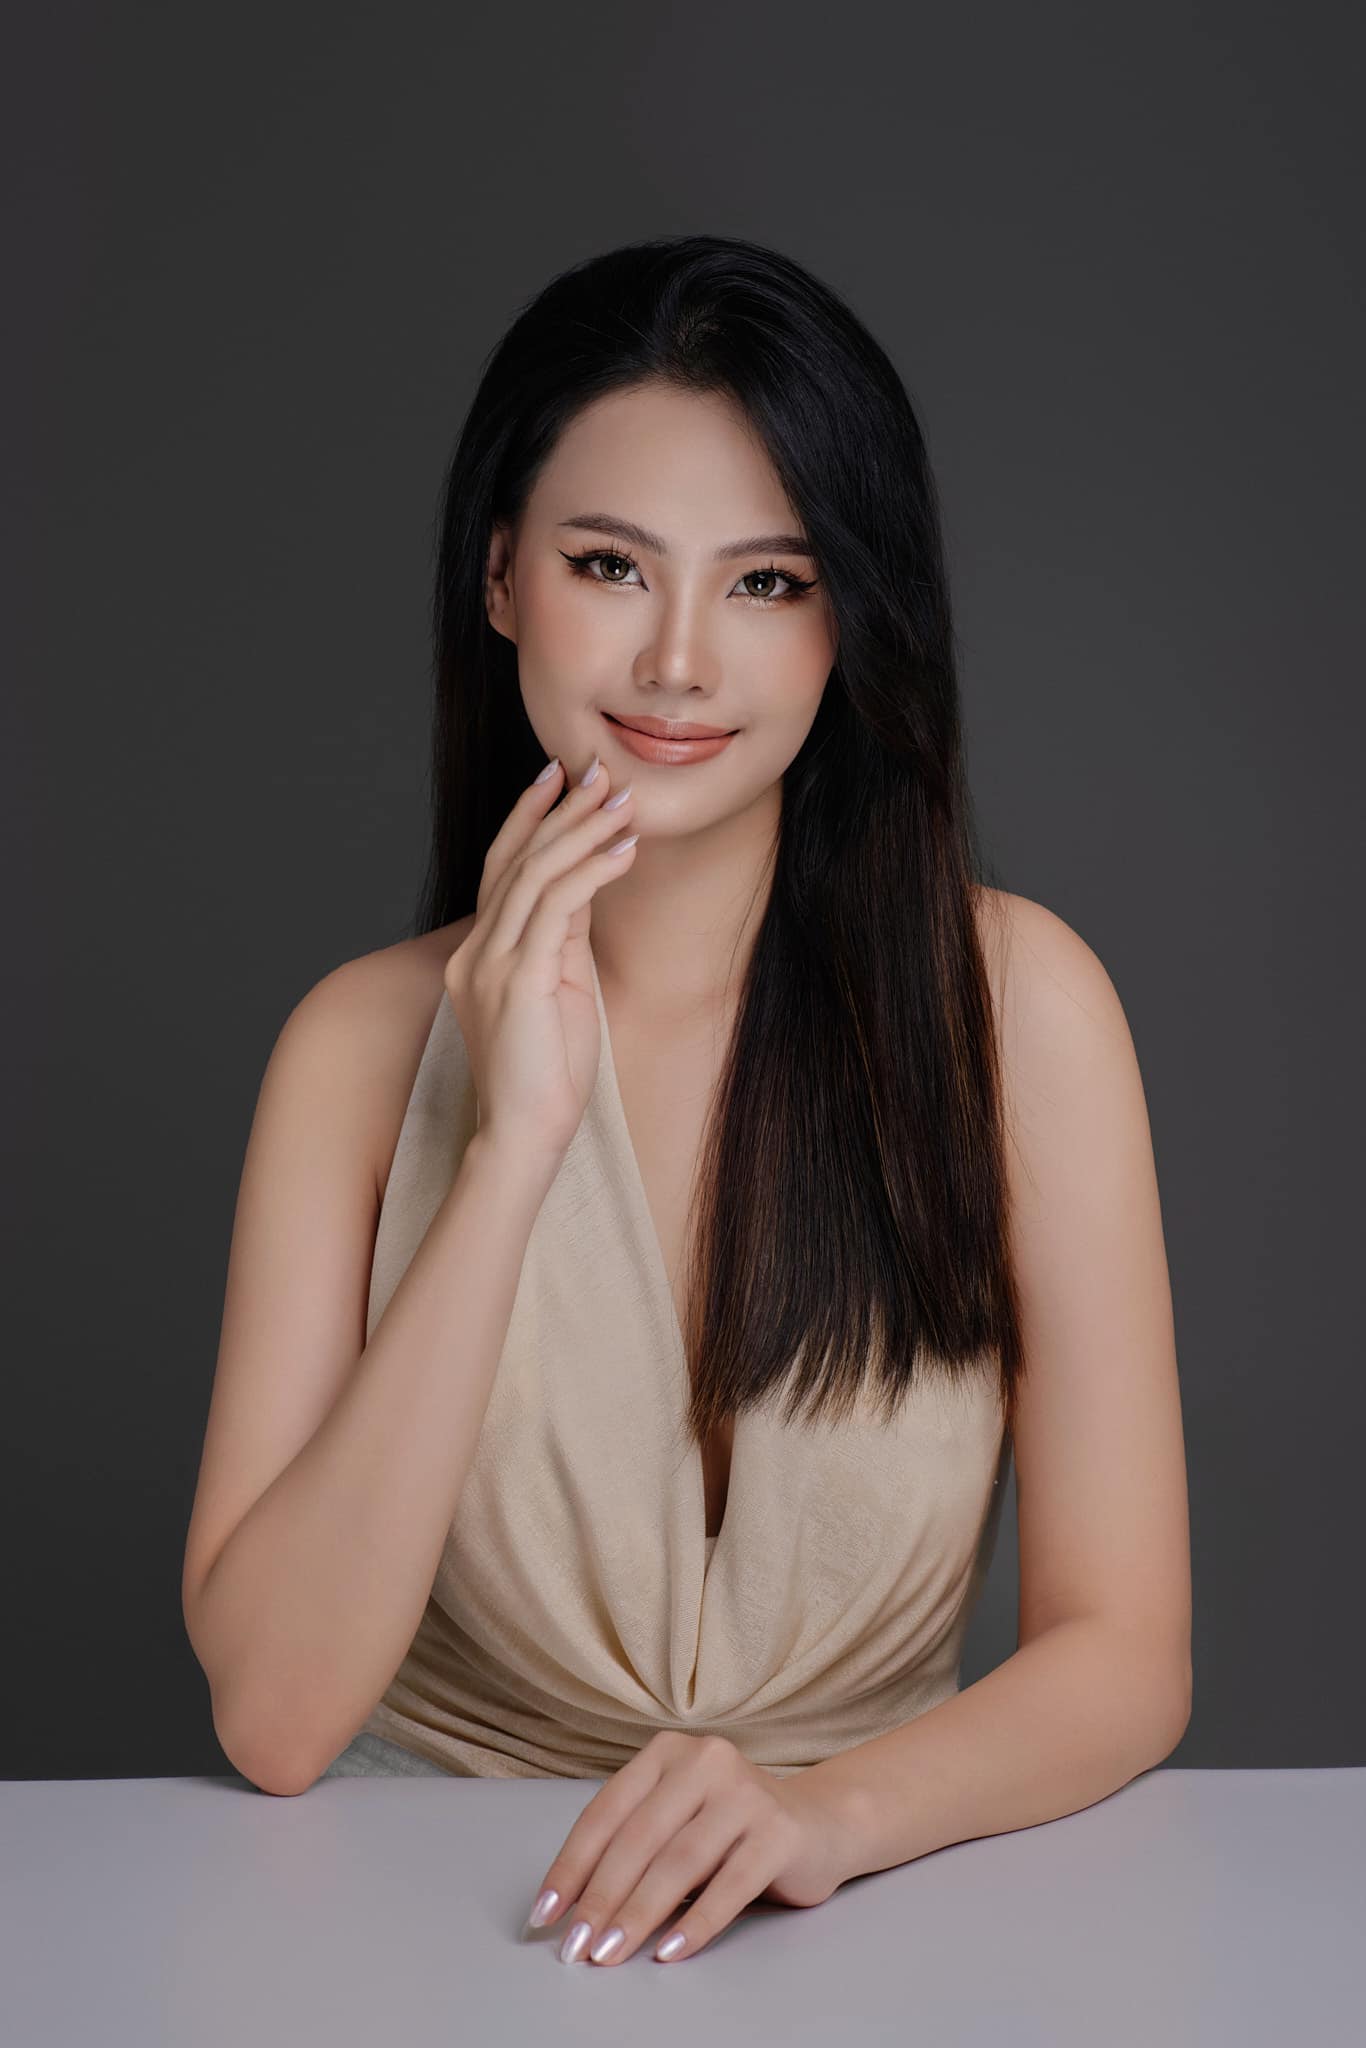 Mỹ nữ gây chú ý vì chân thẳng như thước kẻ, số đo đẹp nhất nhì Miss Earth Vietnam - 6